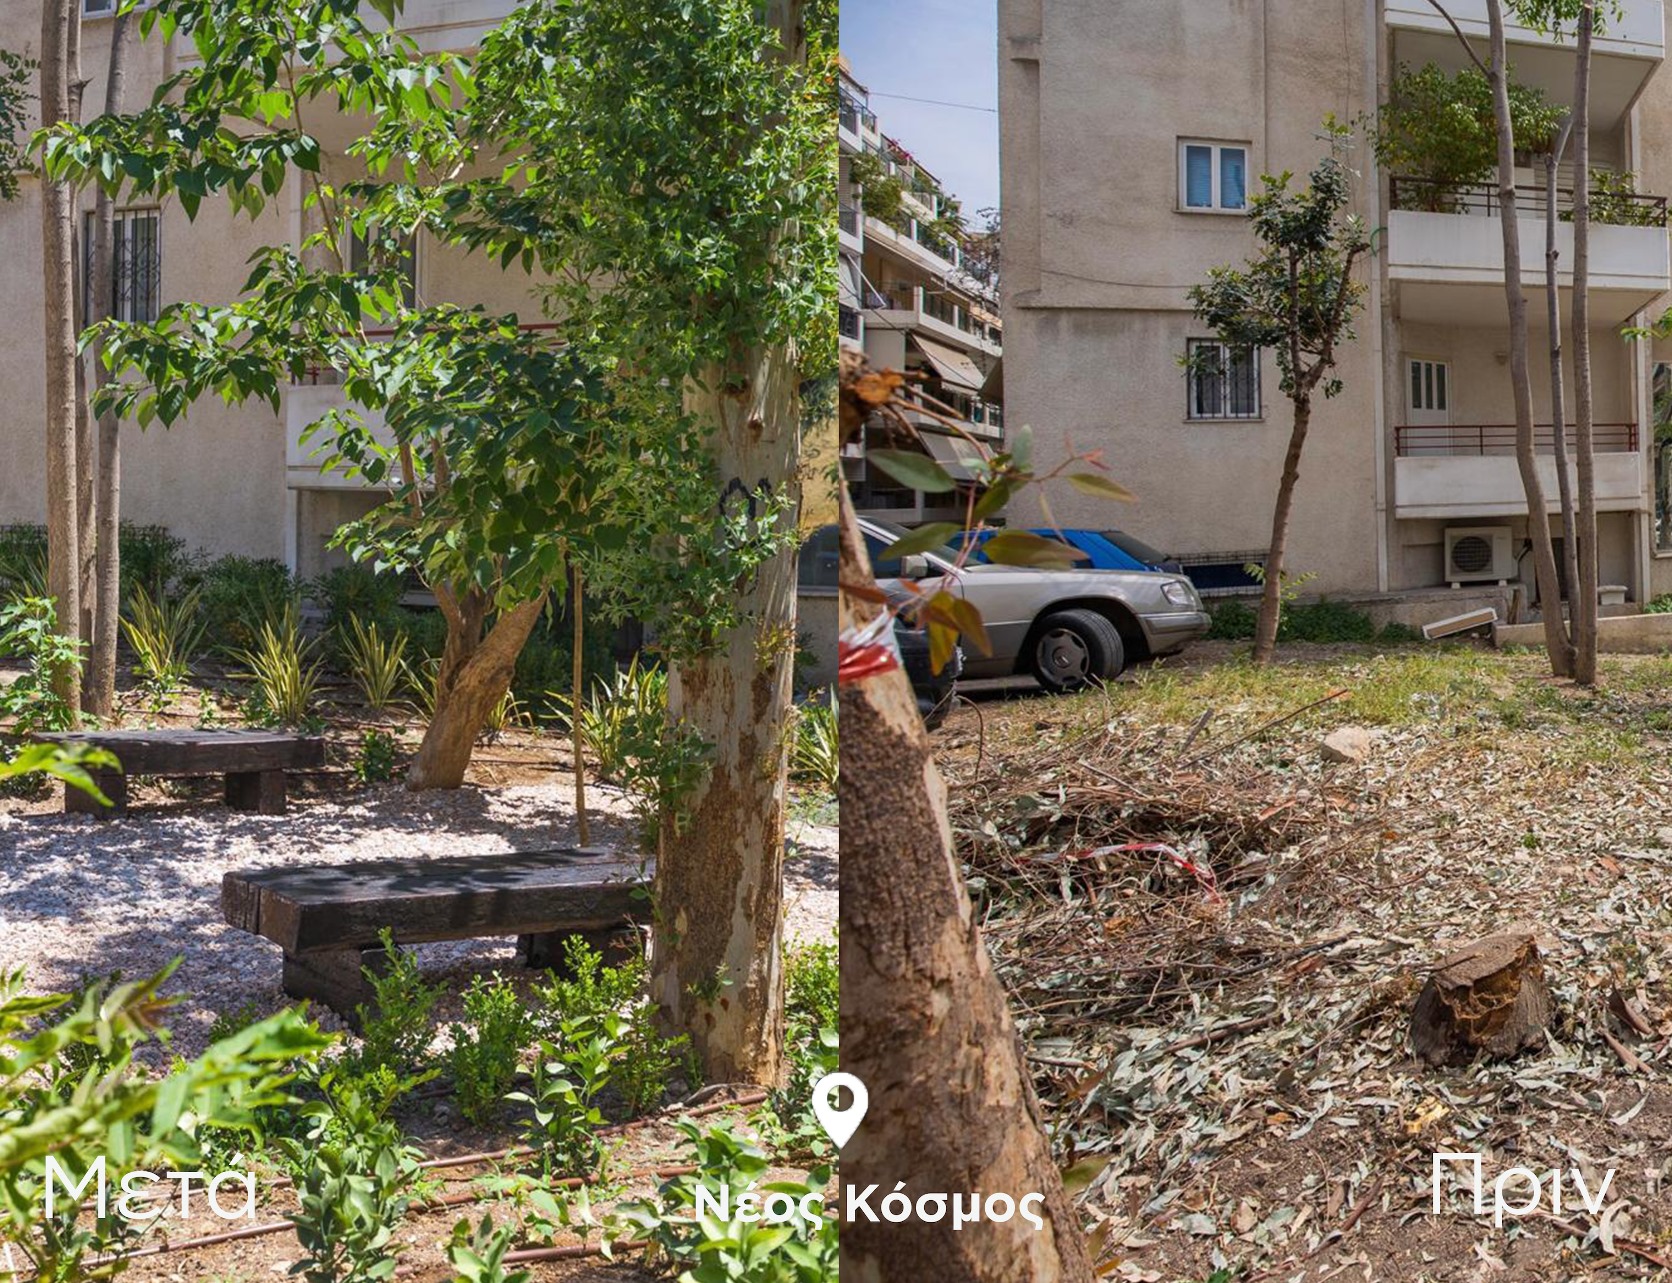 Δήμος Αθηναίων: Στη διάθεση των κατοίκων ένας πρότυπος χώρος αναψυχής